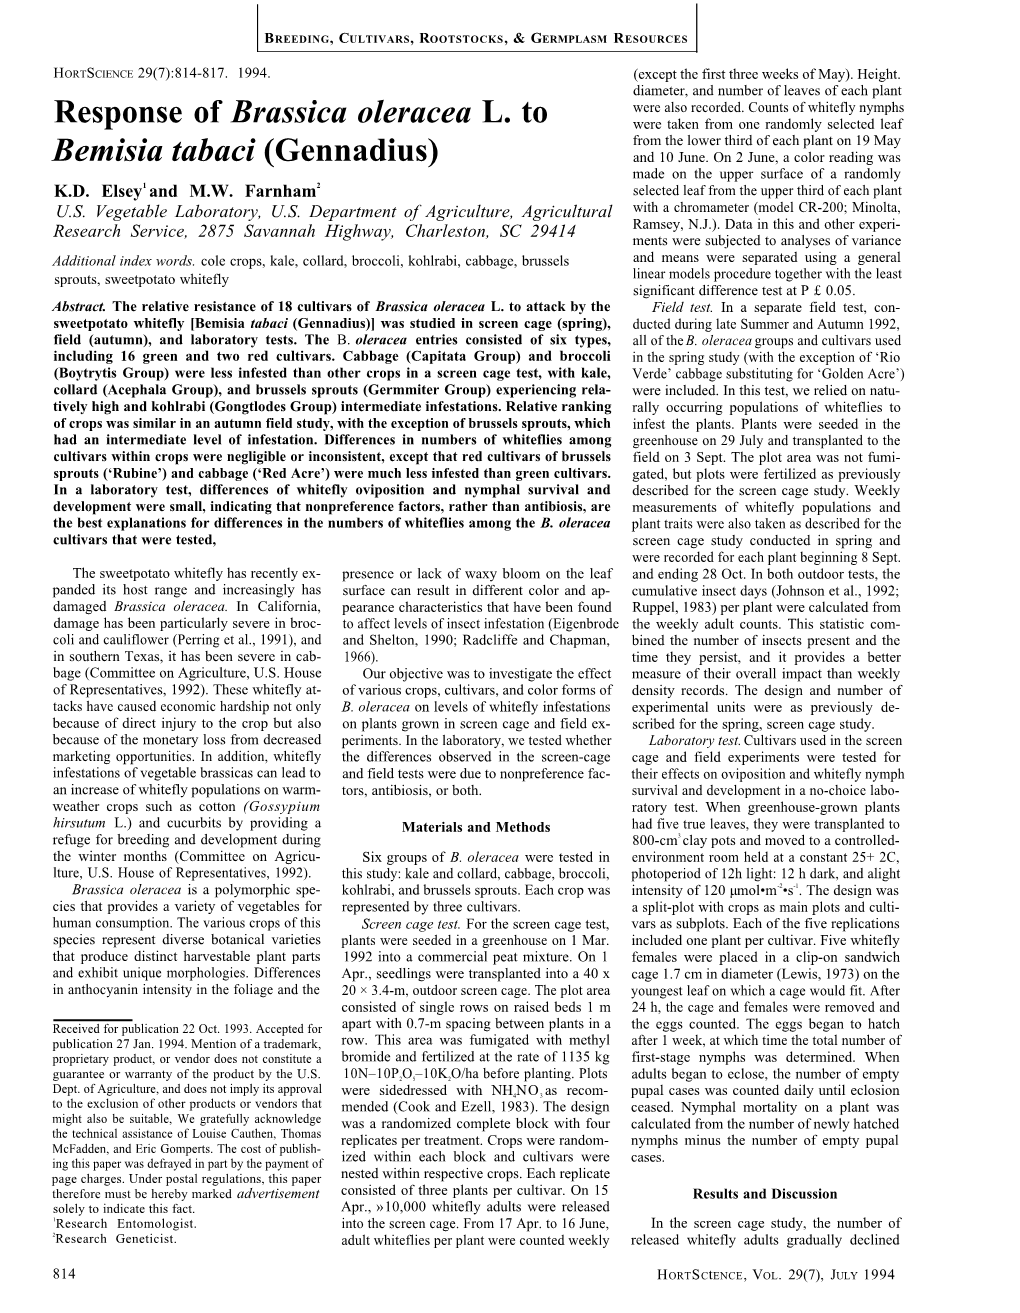 Response of Brassica Oleracea L. to Bemisia Tabaci (Gennadius)